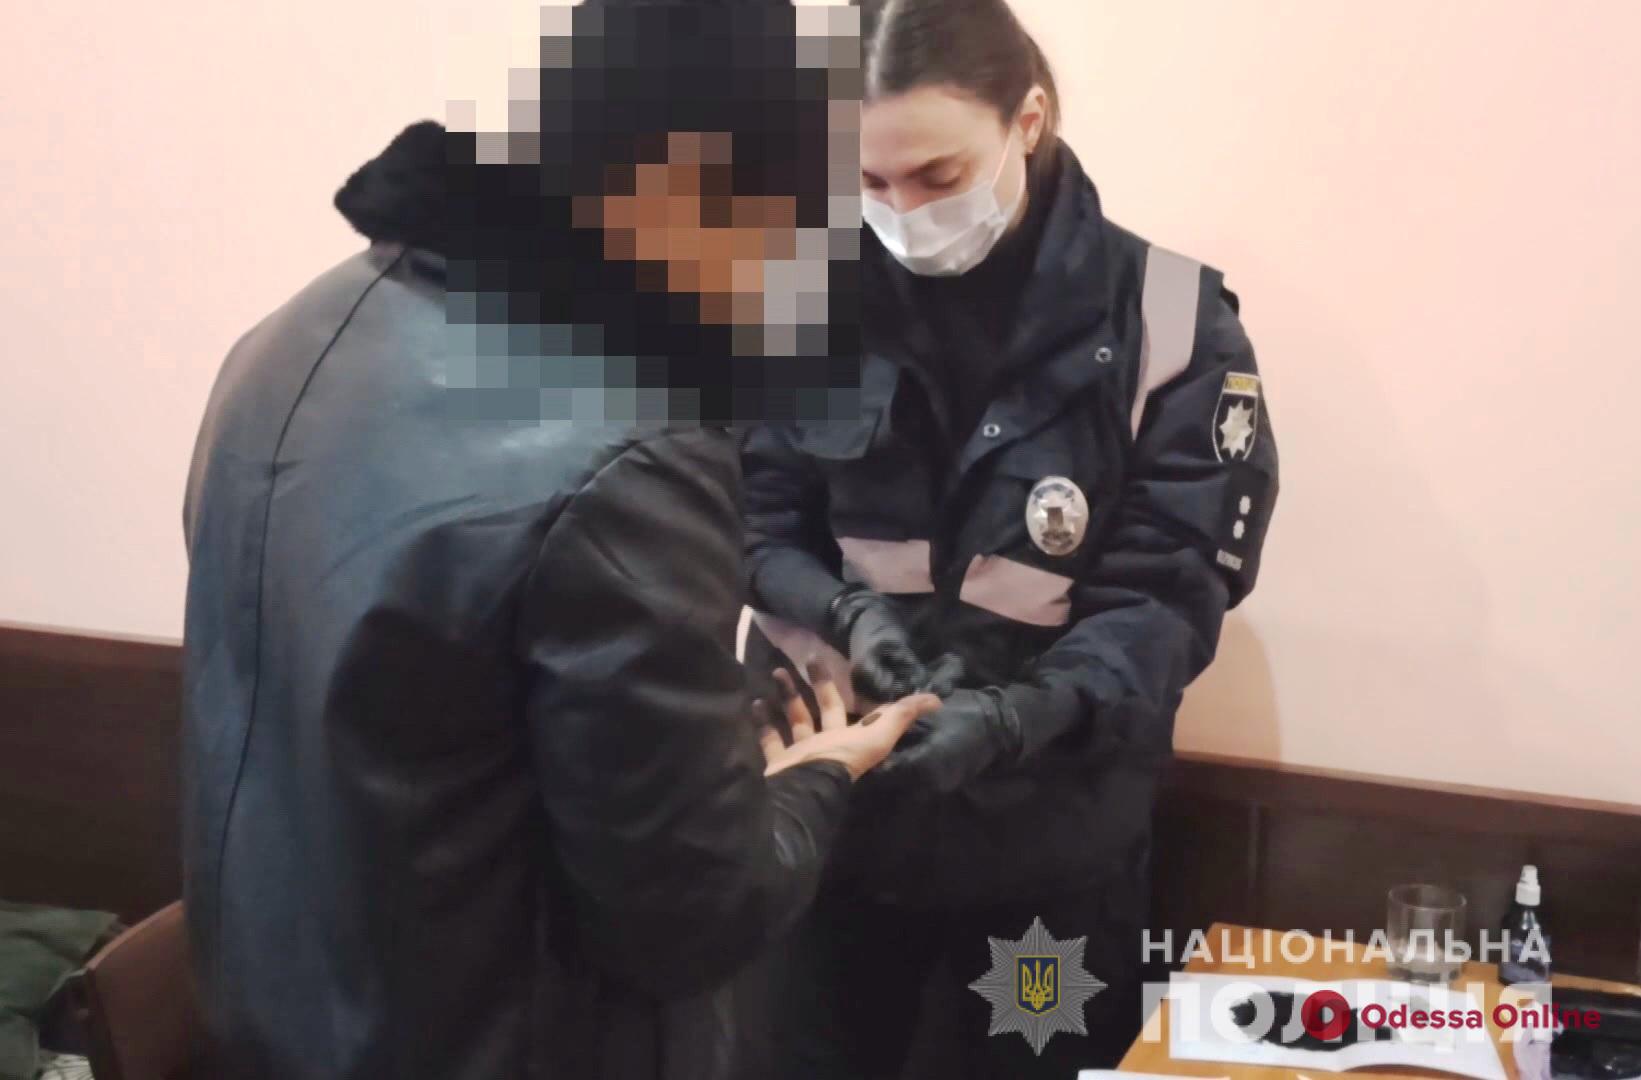 Избили даже девушку: в Одессе задержали трех человек, занимавшихся грабежами и разбоями (видео)